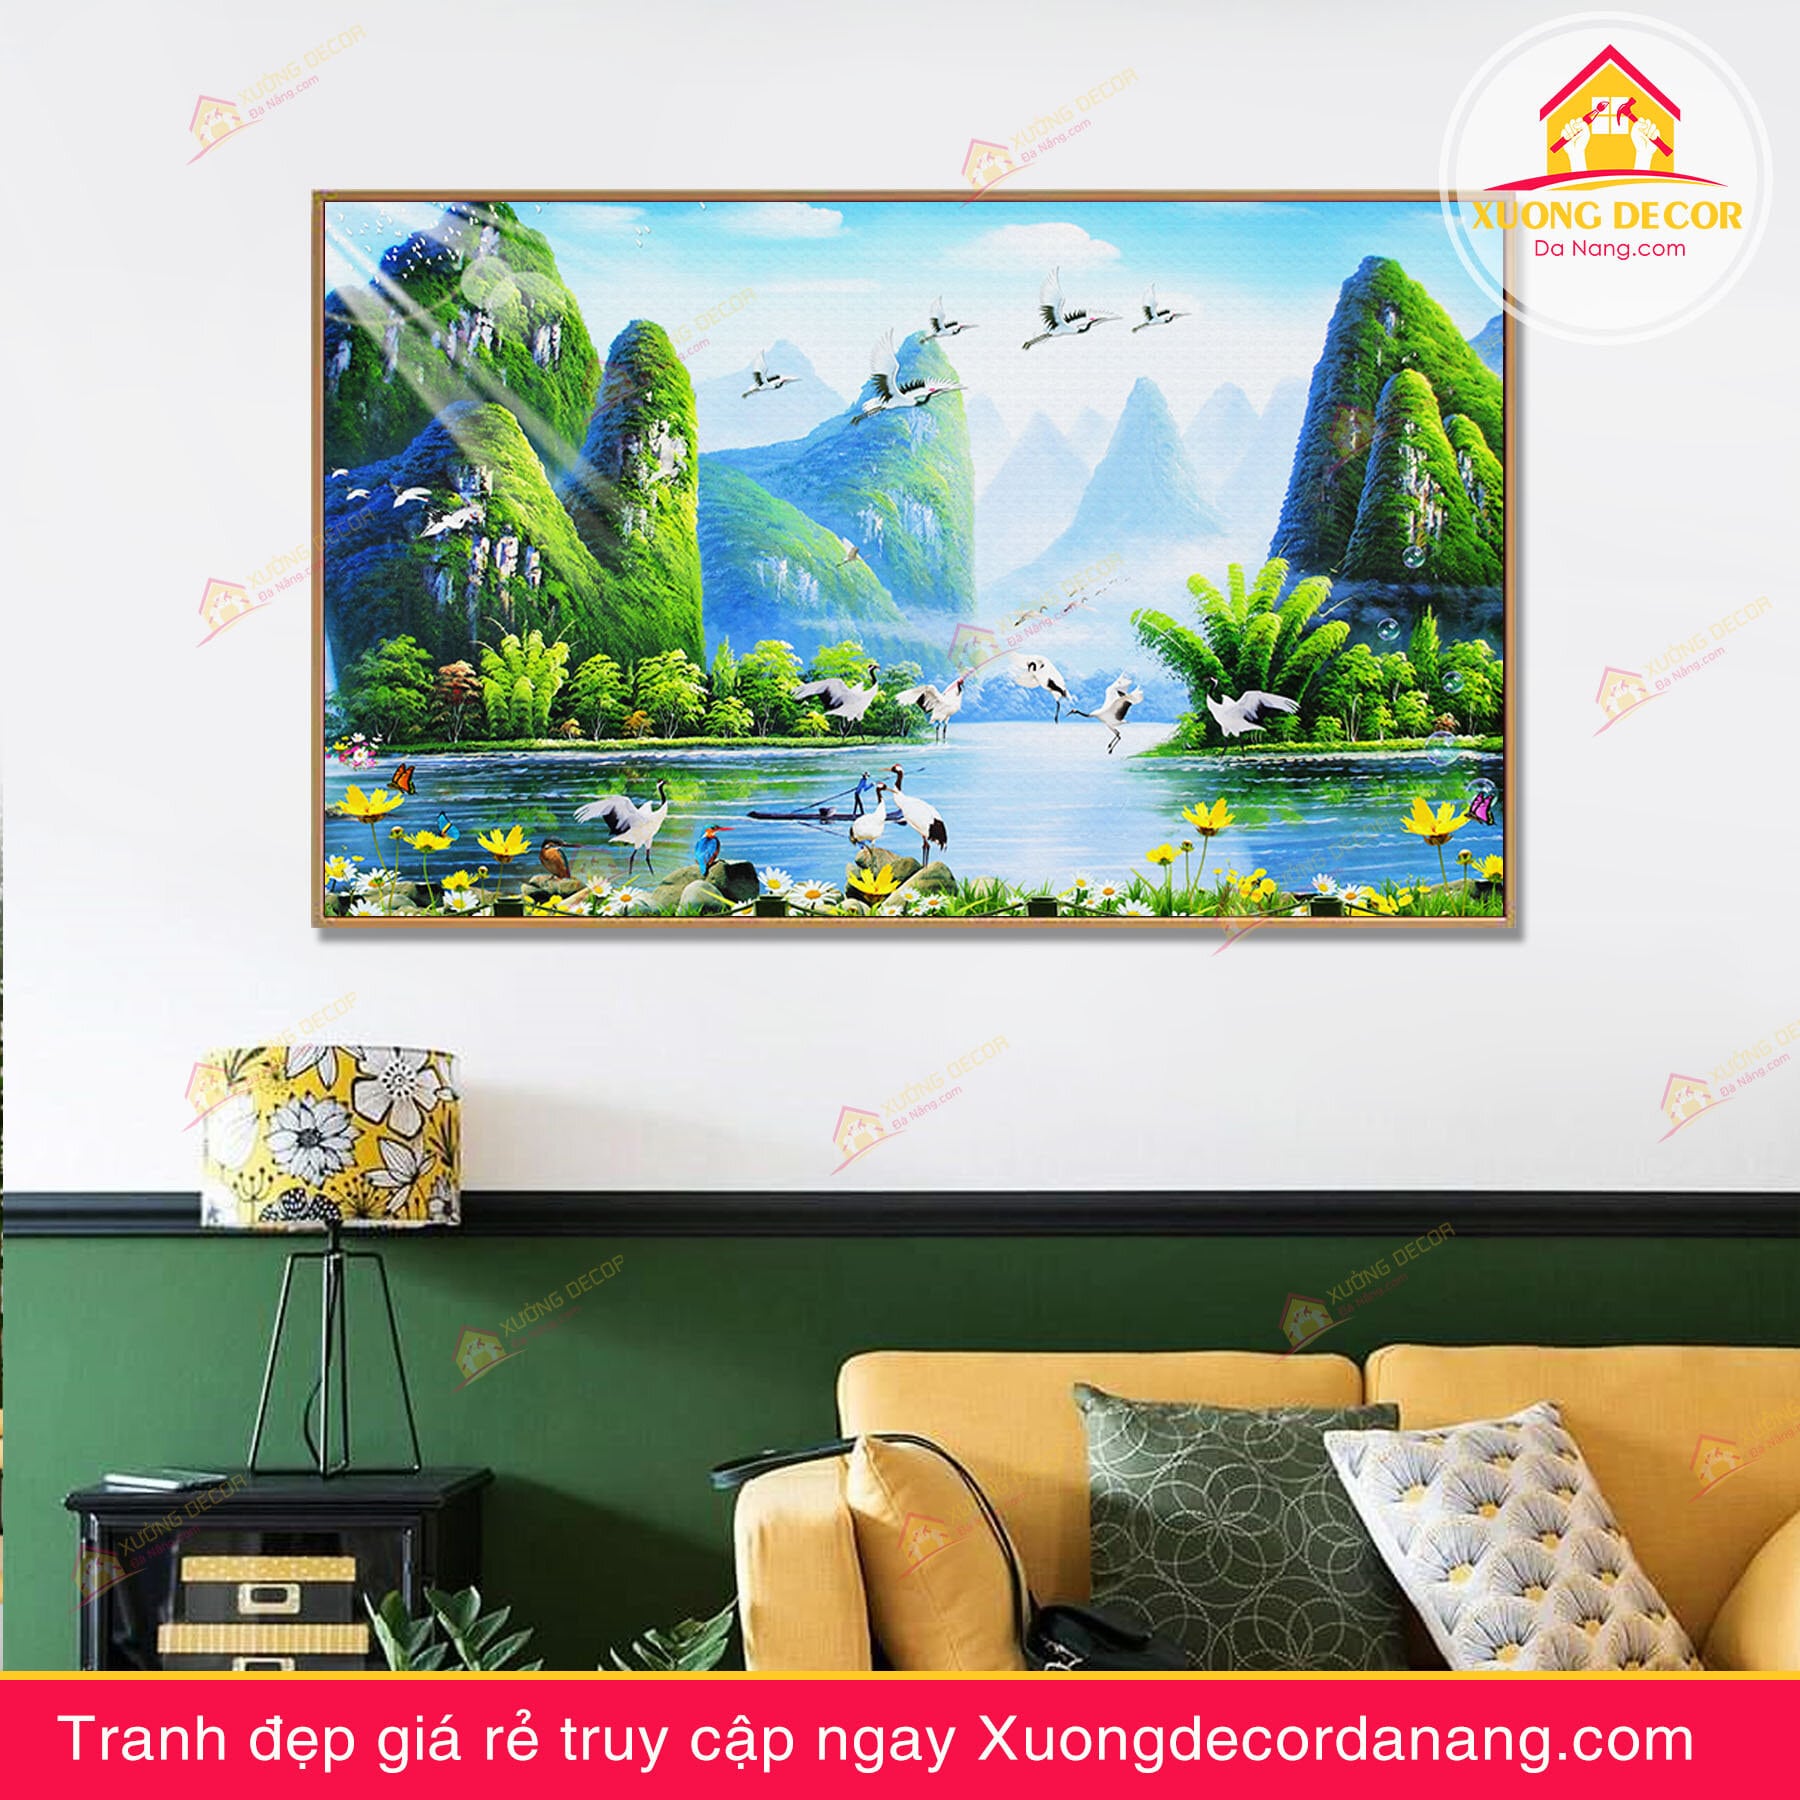 Tranh treo tường phong cảnh và hạc trắng - TPC66 - Xưởng Decor Đà Nẵng -  Xưởng tranh canvas và nội thất decor giá rẻ tại Đà Nẵng